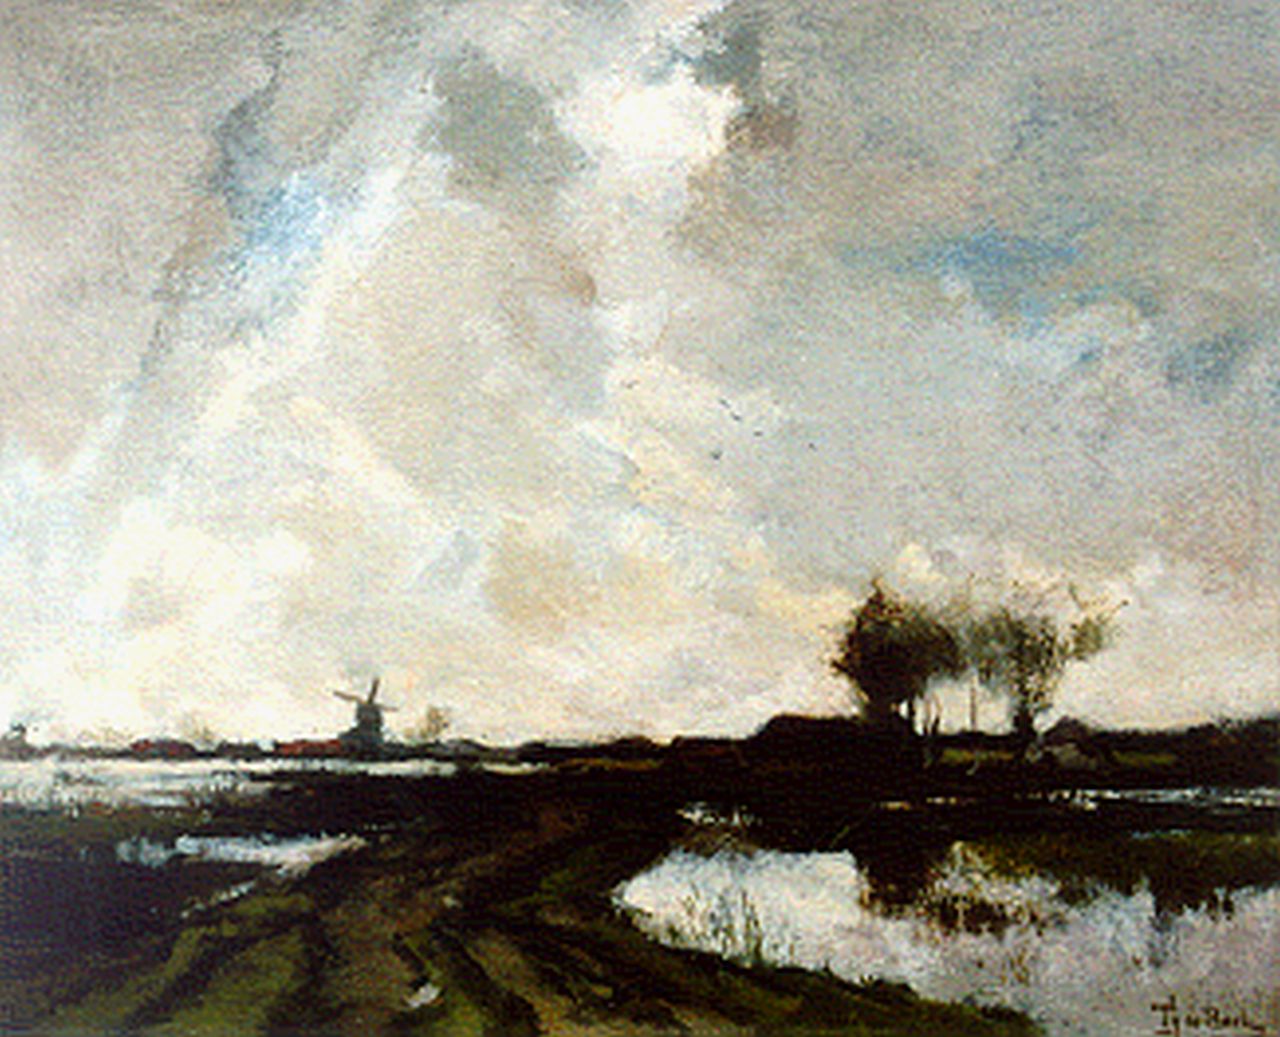 Bock T.E.A. de | Théophile Emile Achille de Bock, A polder landscape, oil on canvas 37.0 x 45.7 cm, signed l.r.